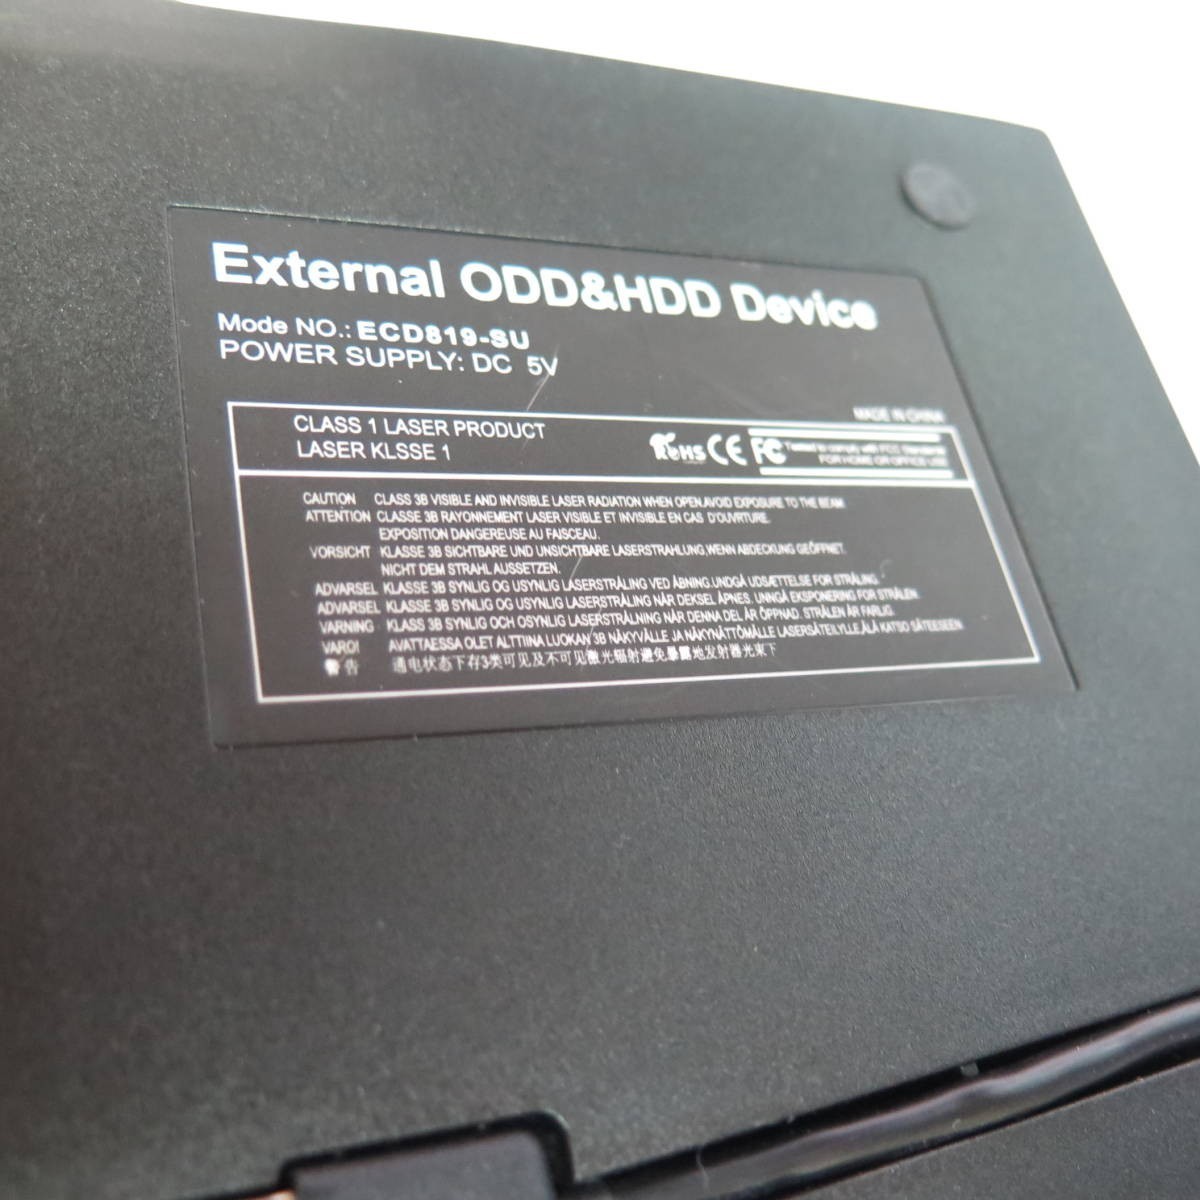 @軽量 ケーブル収納式USB外付けDVDマルチドライブ ECD819-SU モバイル 黒 ポータブル 光学ドライブ USB3.0 LOQA 221011.02_画像4